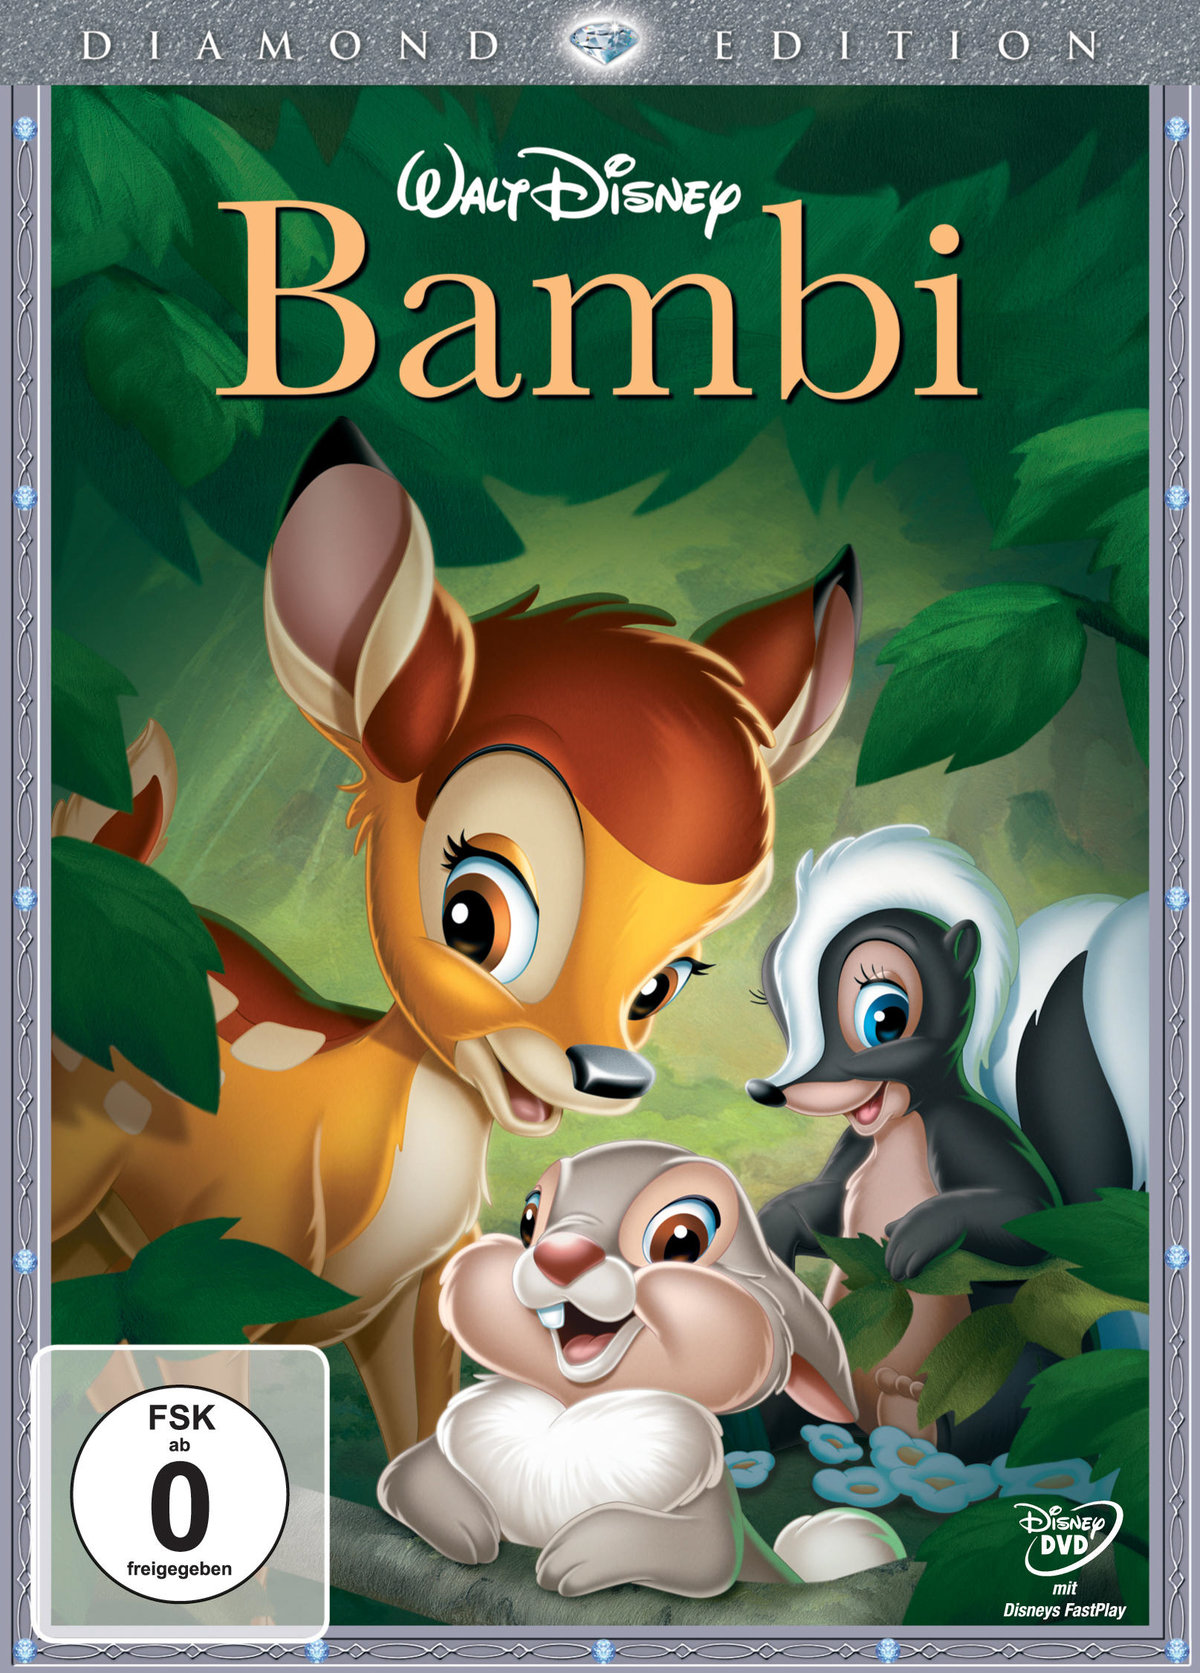 Bambi   Diamond Edition Film auf DVD ausleihen bei verleihshop.de